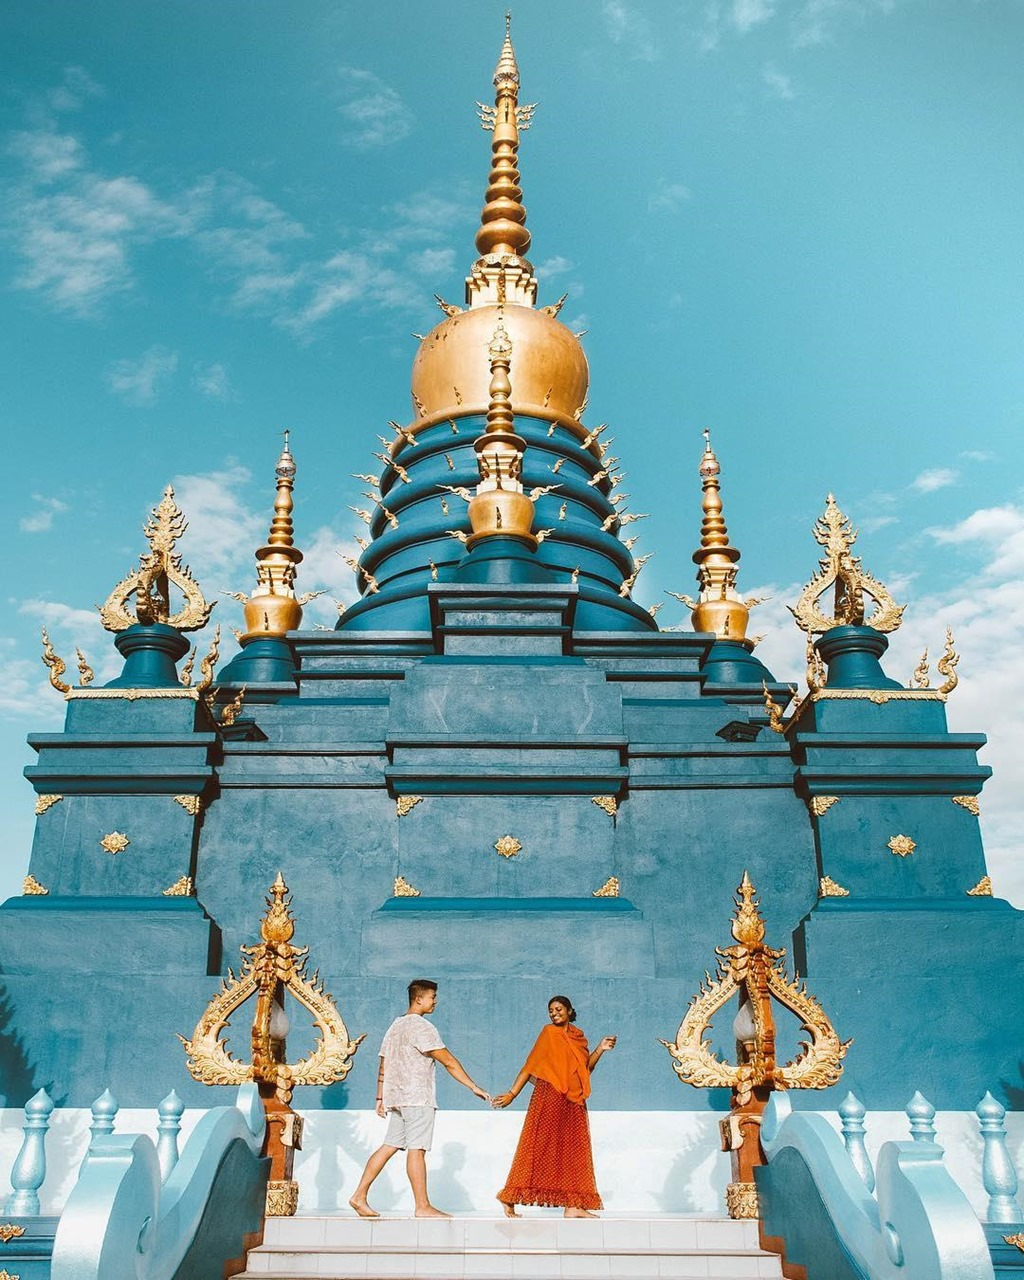 Nhờ tài nghệ khéo léo của những người thực hiện công trình, hai sắc xanh, vàng dù mang đặc tính nóng, lạnh đối chọi nhau vẫn cộng hưởng hài hòa ở Wat Rong Suer Ten. Ảnh: Sưu tầm.